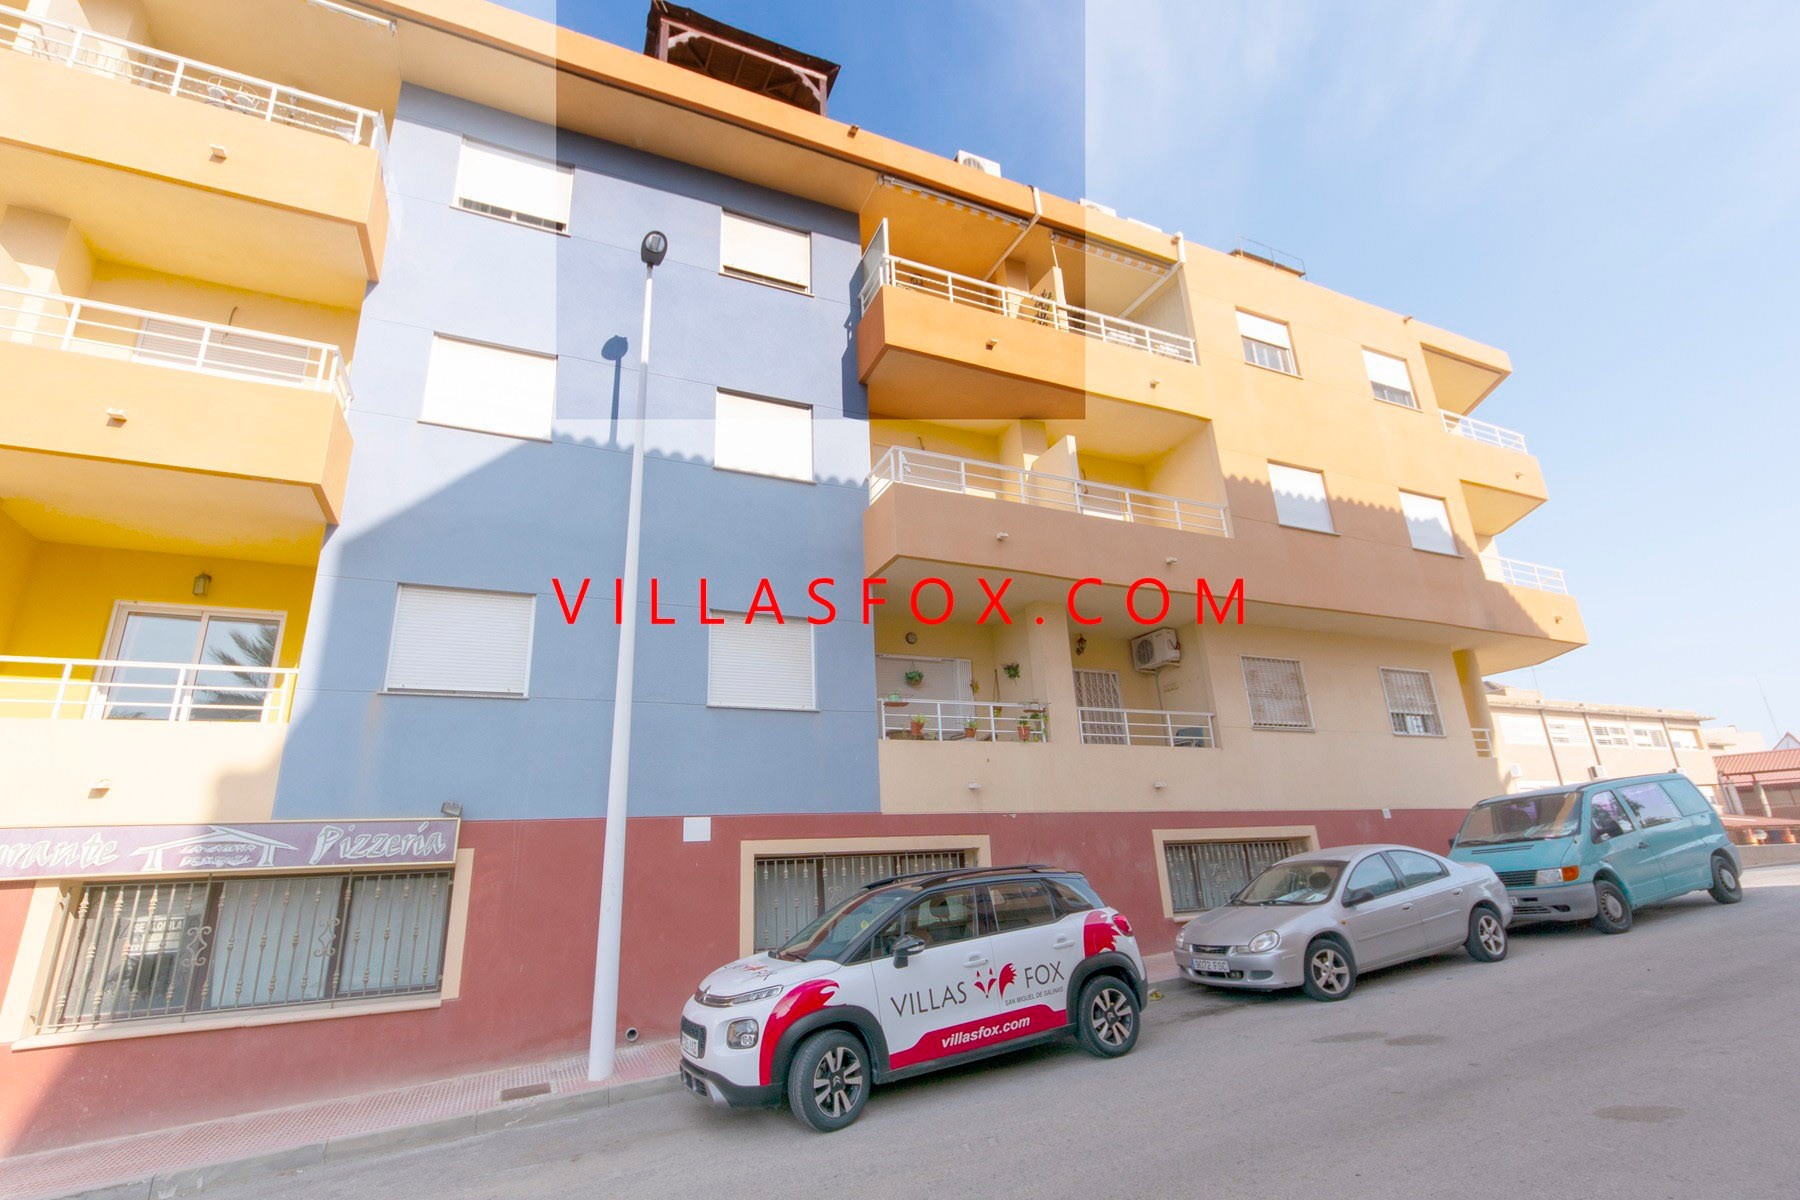 1 San Miguel de Salinas Apartament în centrul orașului de Villas Fox cei mai buni agenti imobiliari 611039449965e